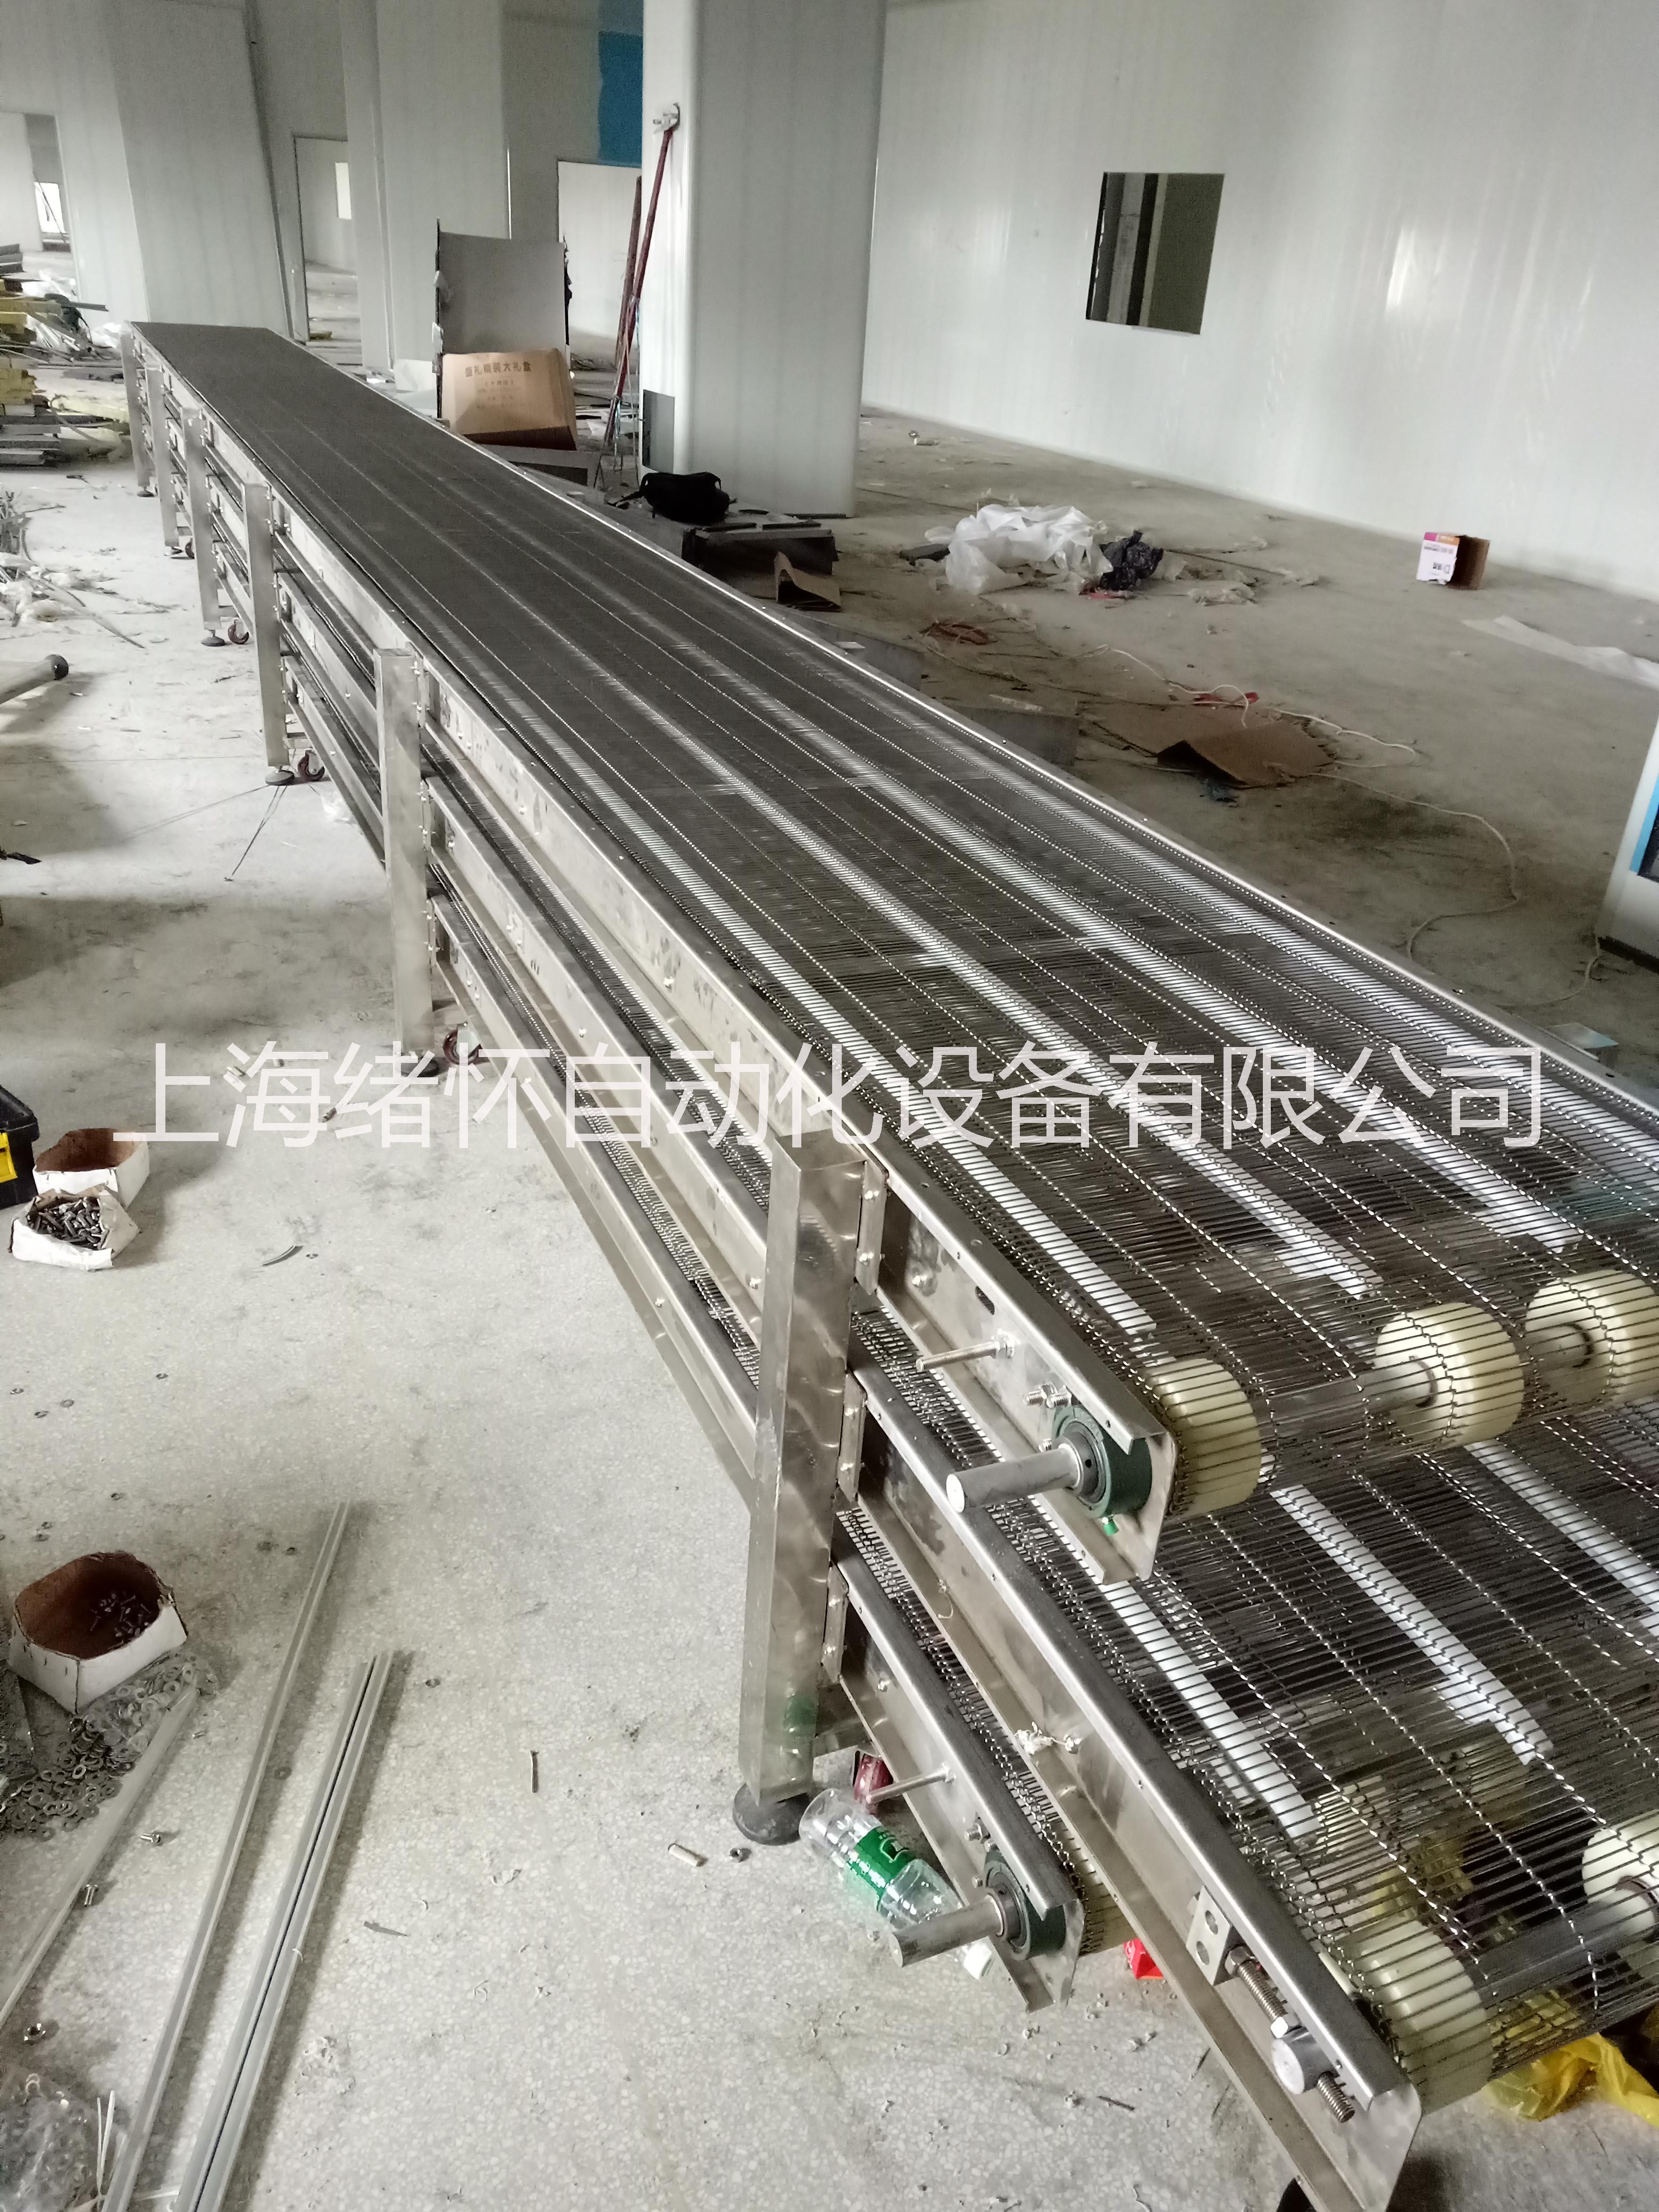 上海厂家供应乙型网带线 金属网带输送线 输送机价格 定制款图片